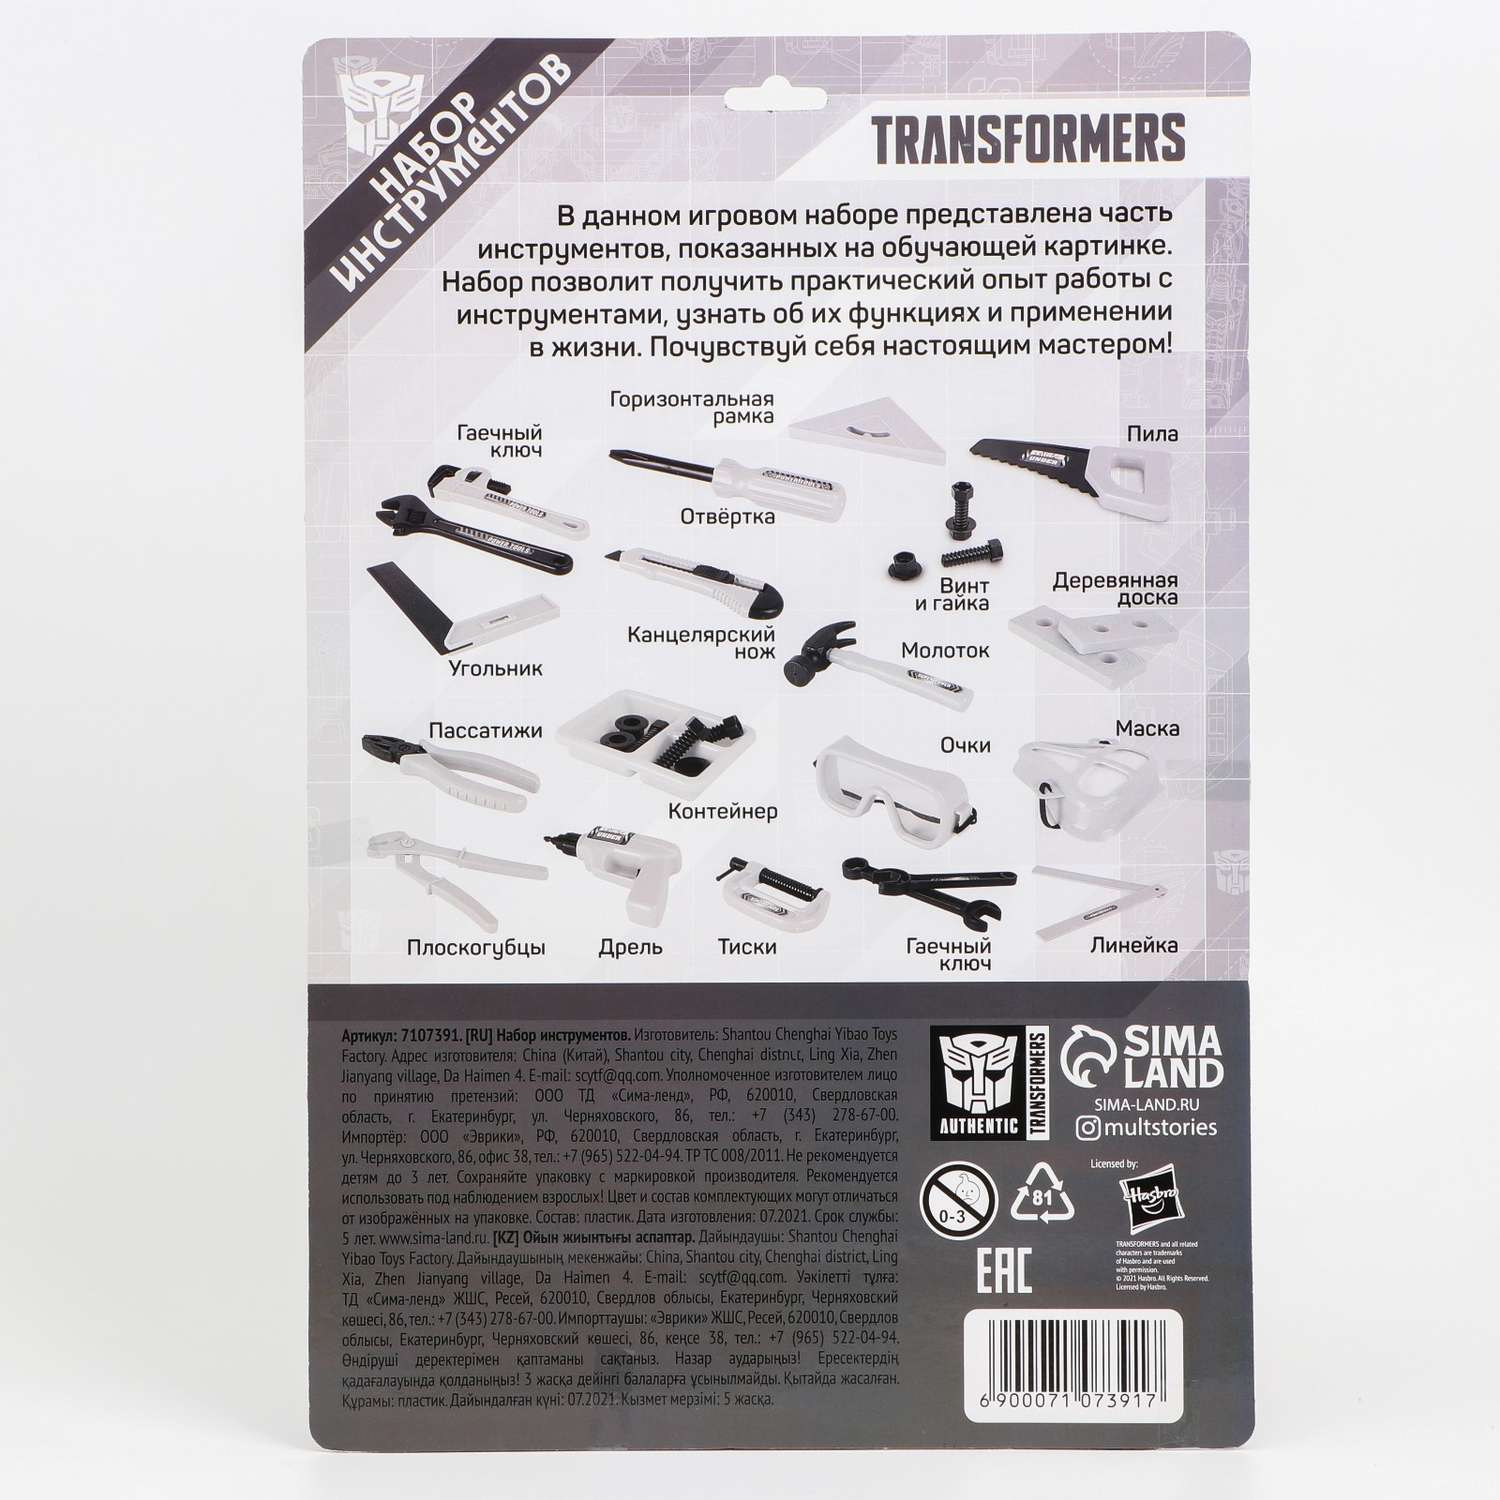 Игровой набор Hasbro «Инструменты Transformers» - фото 6